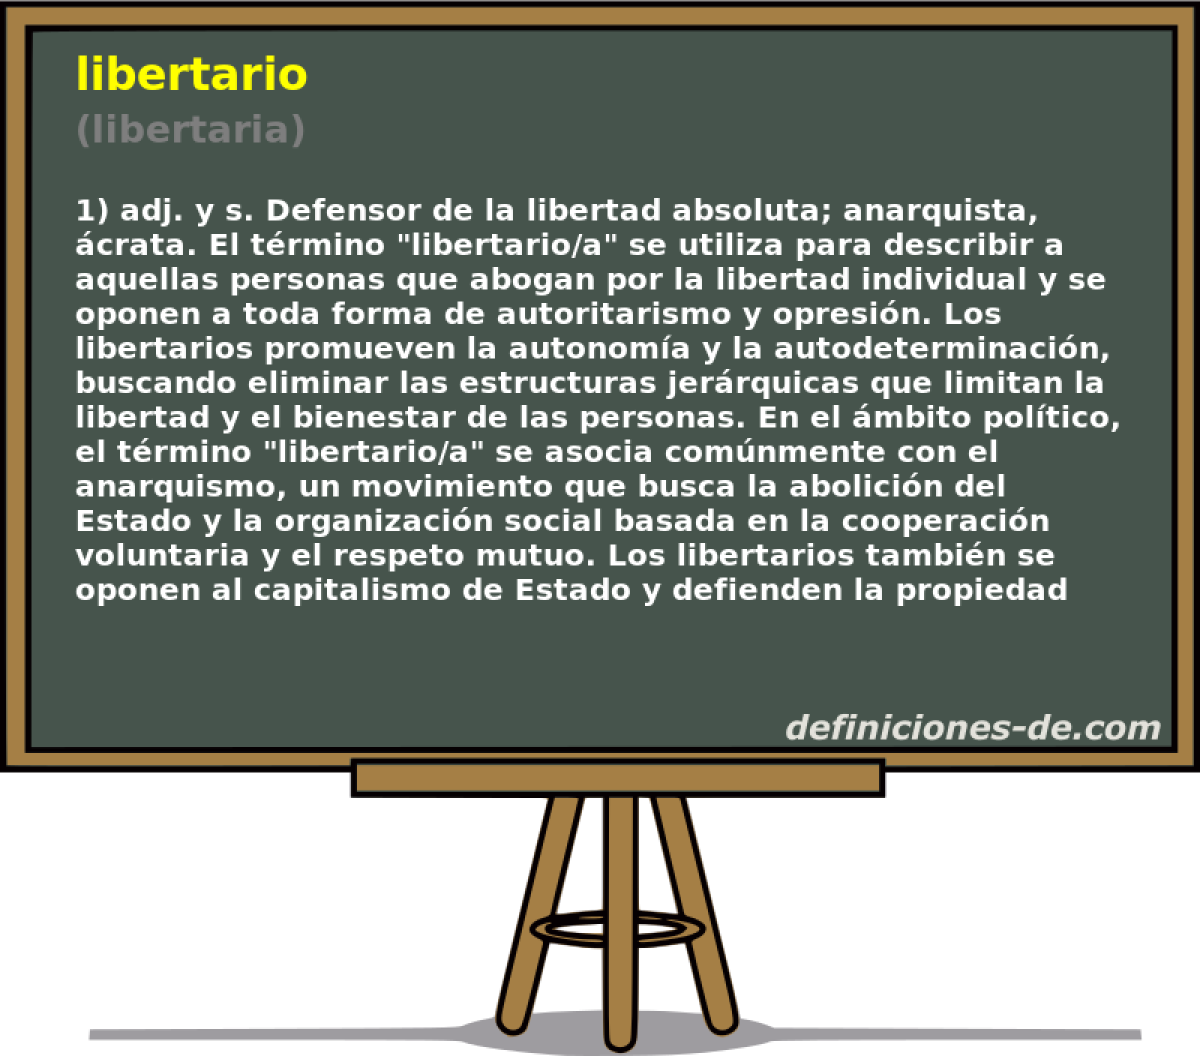 libertario (libertaria)